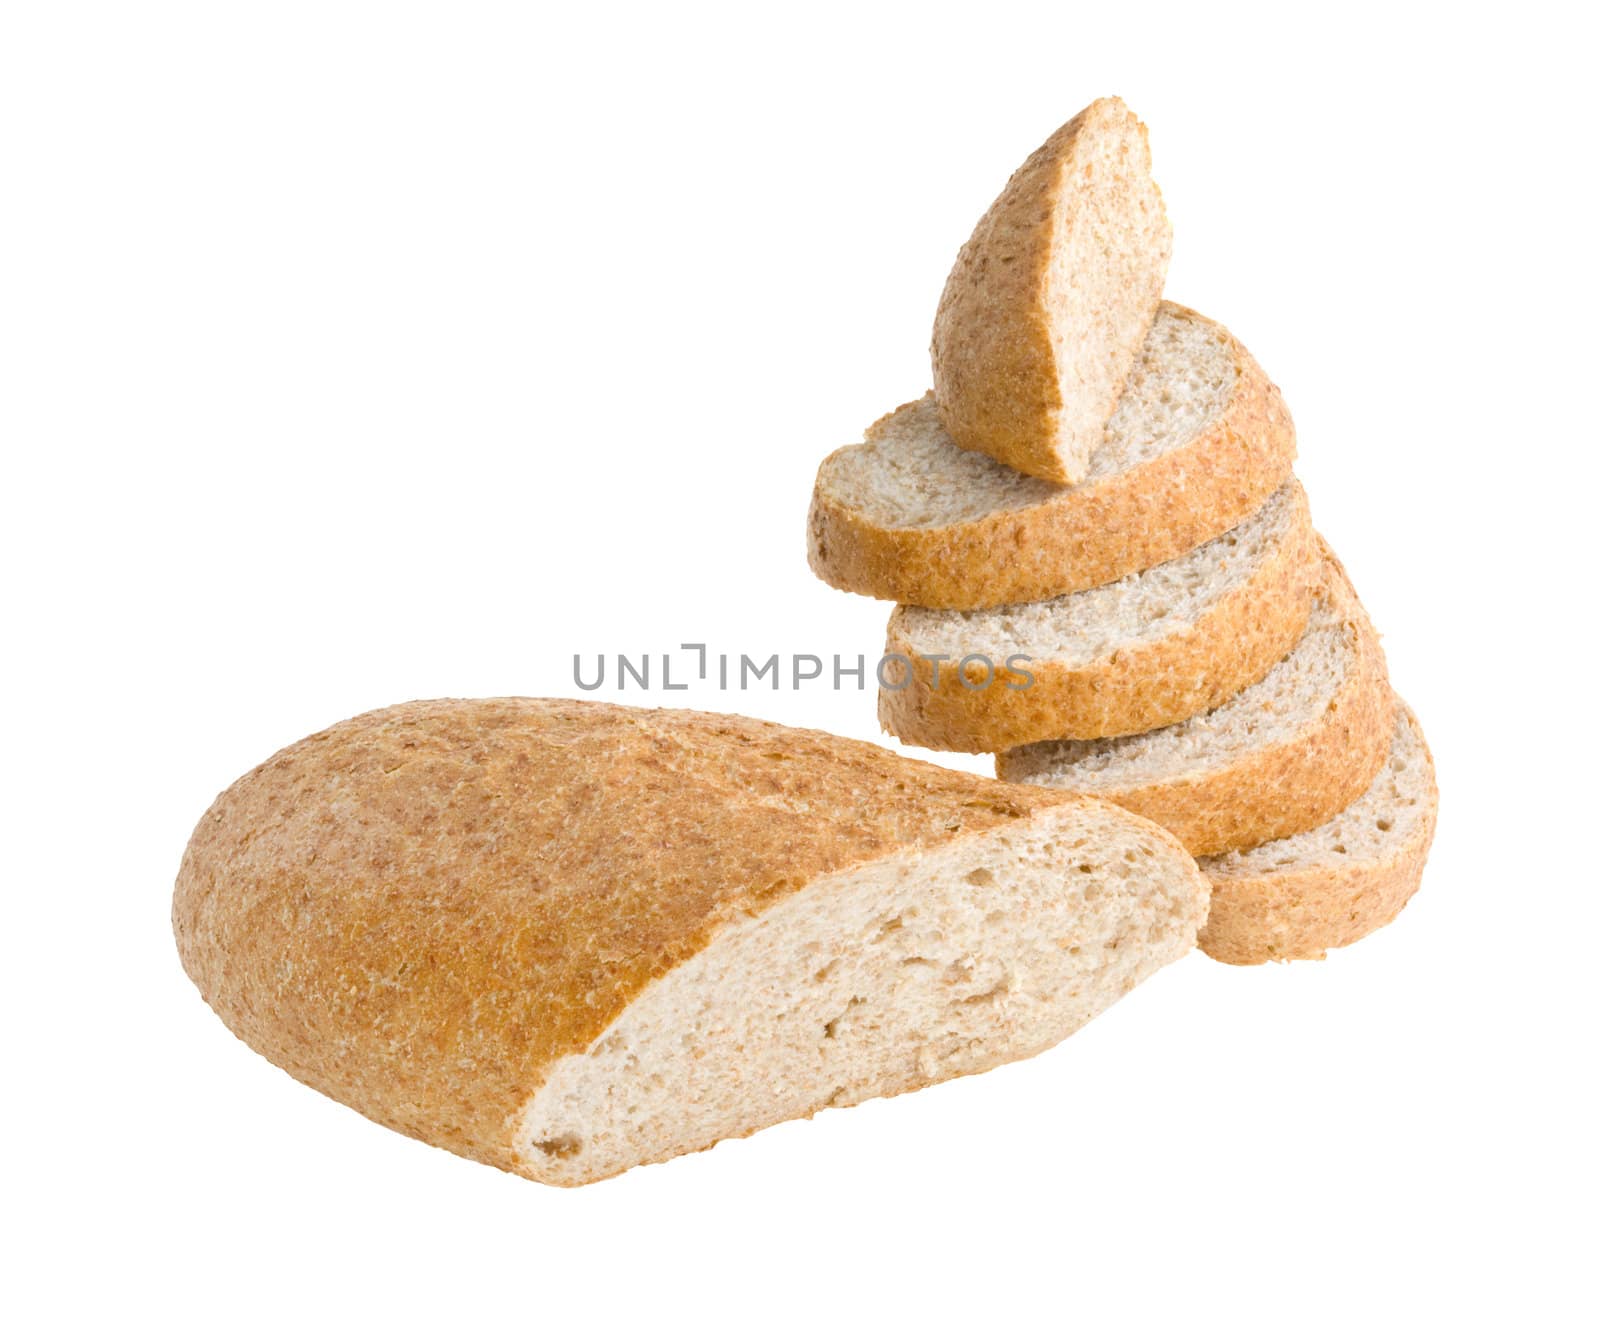 Bread by fotoedgaras